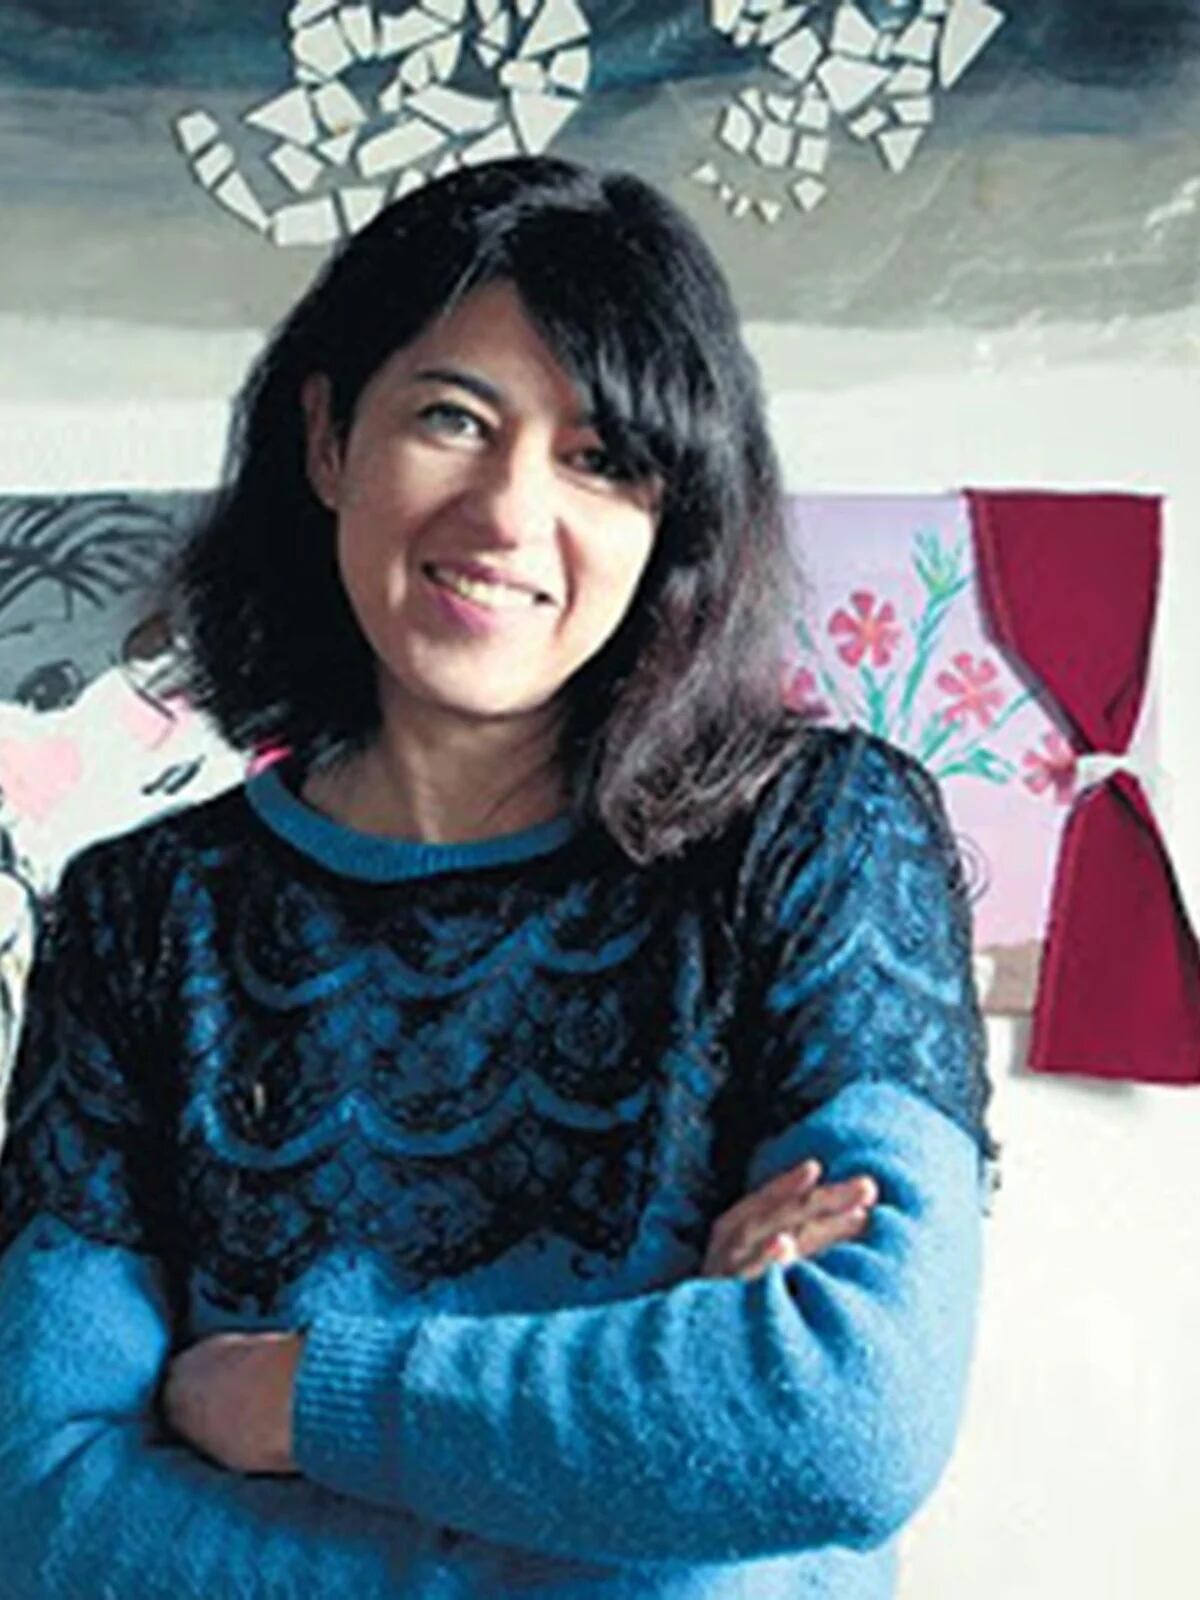 El MoMA compró 25 dibujos de la artista argentina Fernanda Laguna